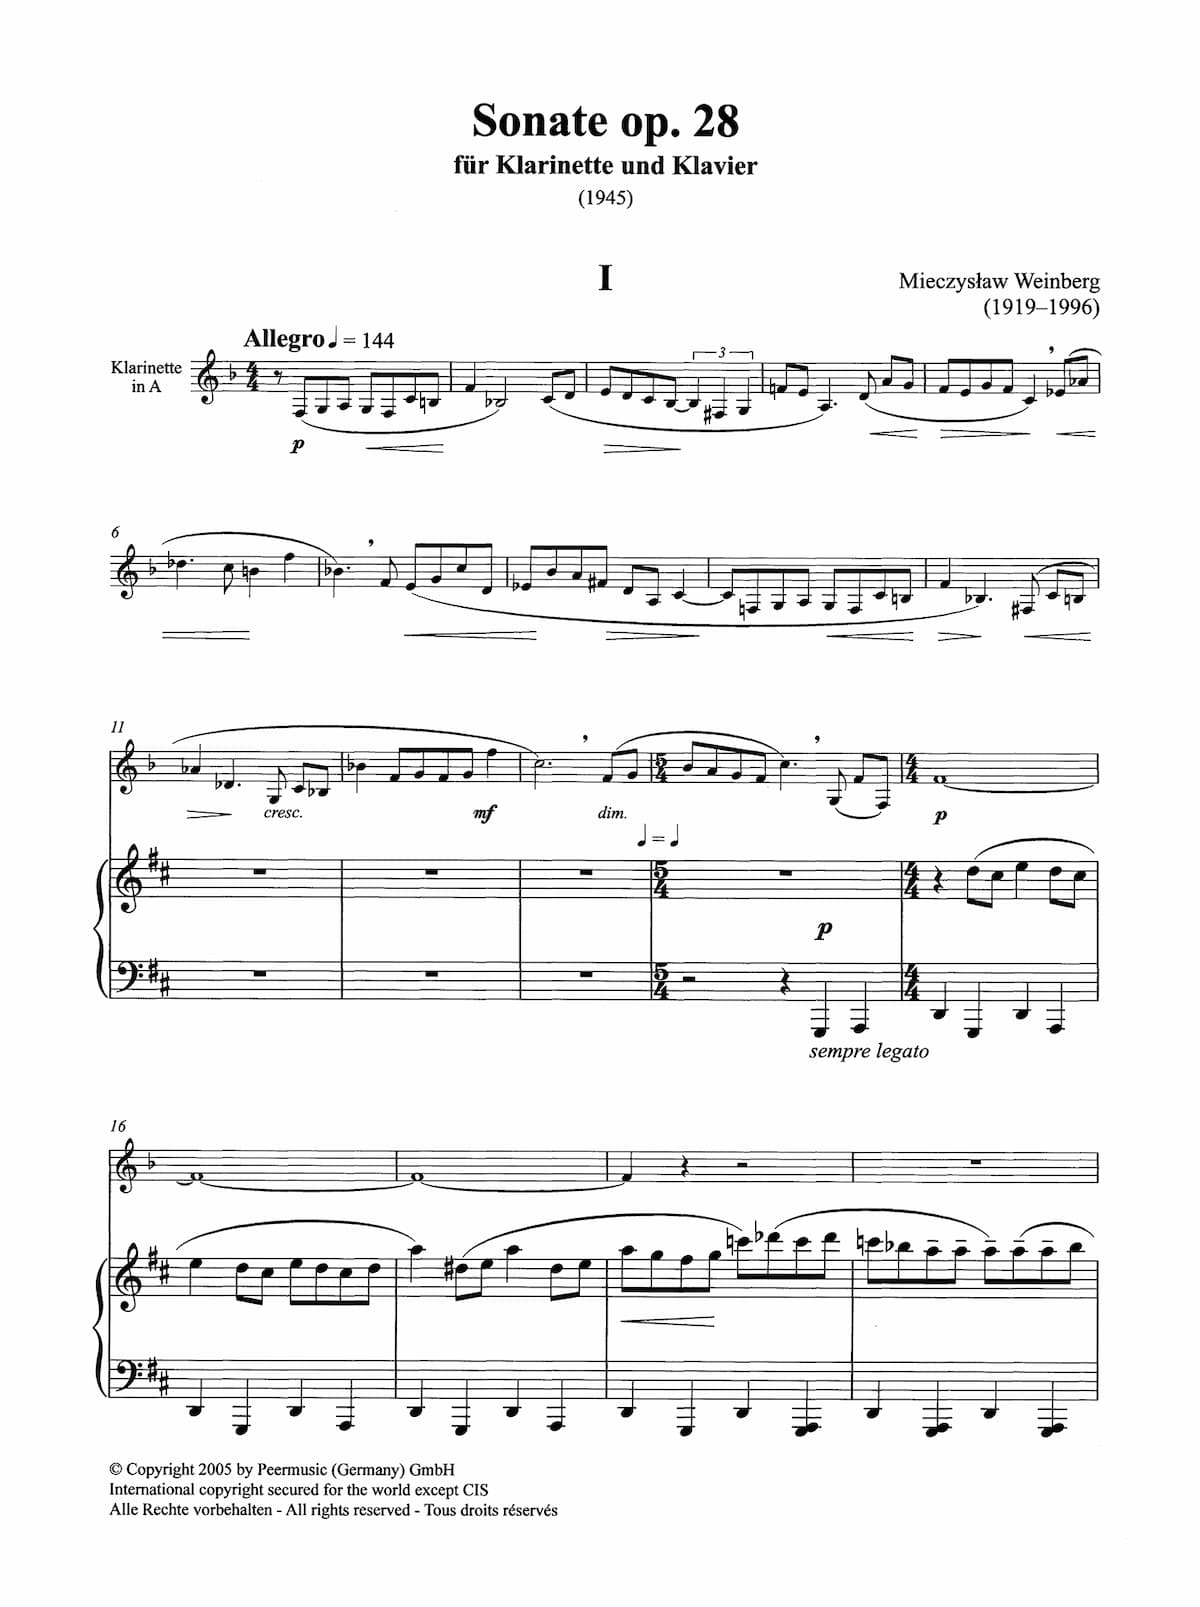 Mieczysław Weinberg's Clarinet Sonata music score